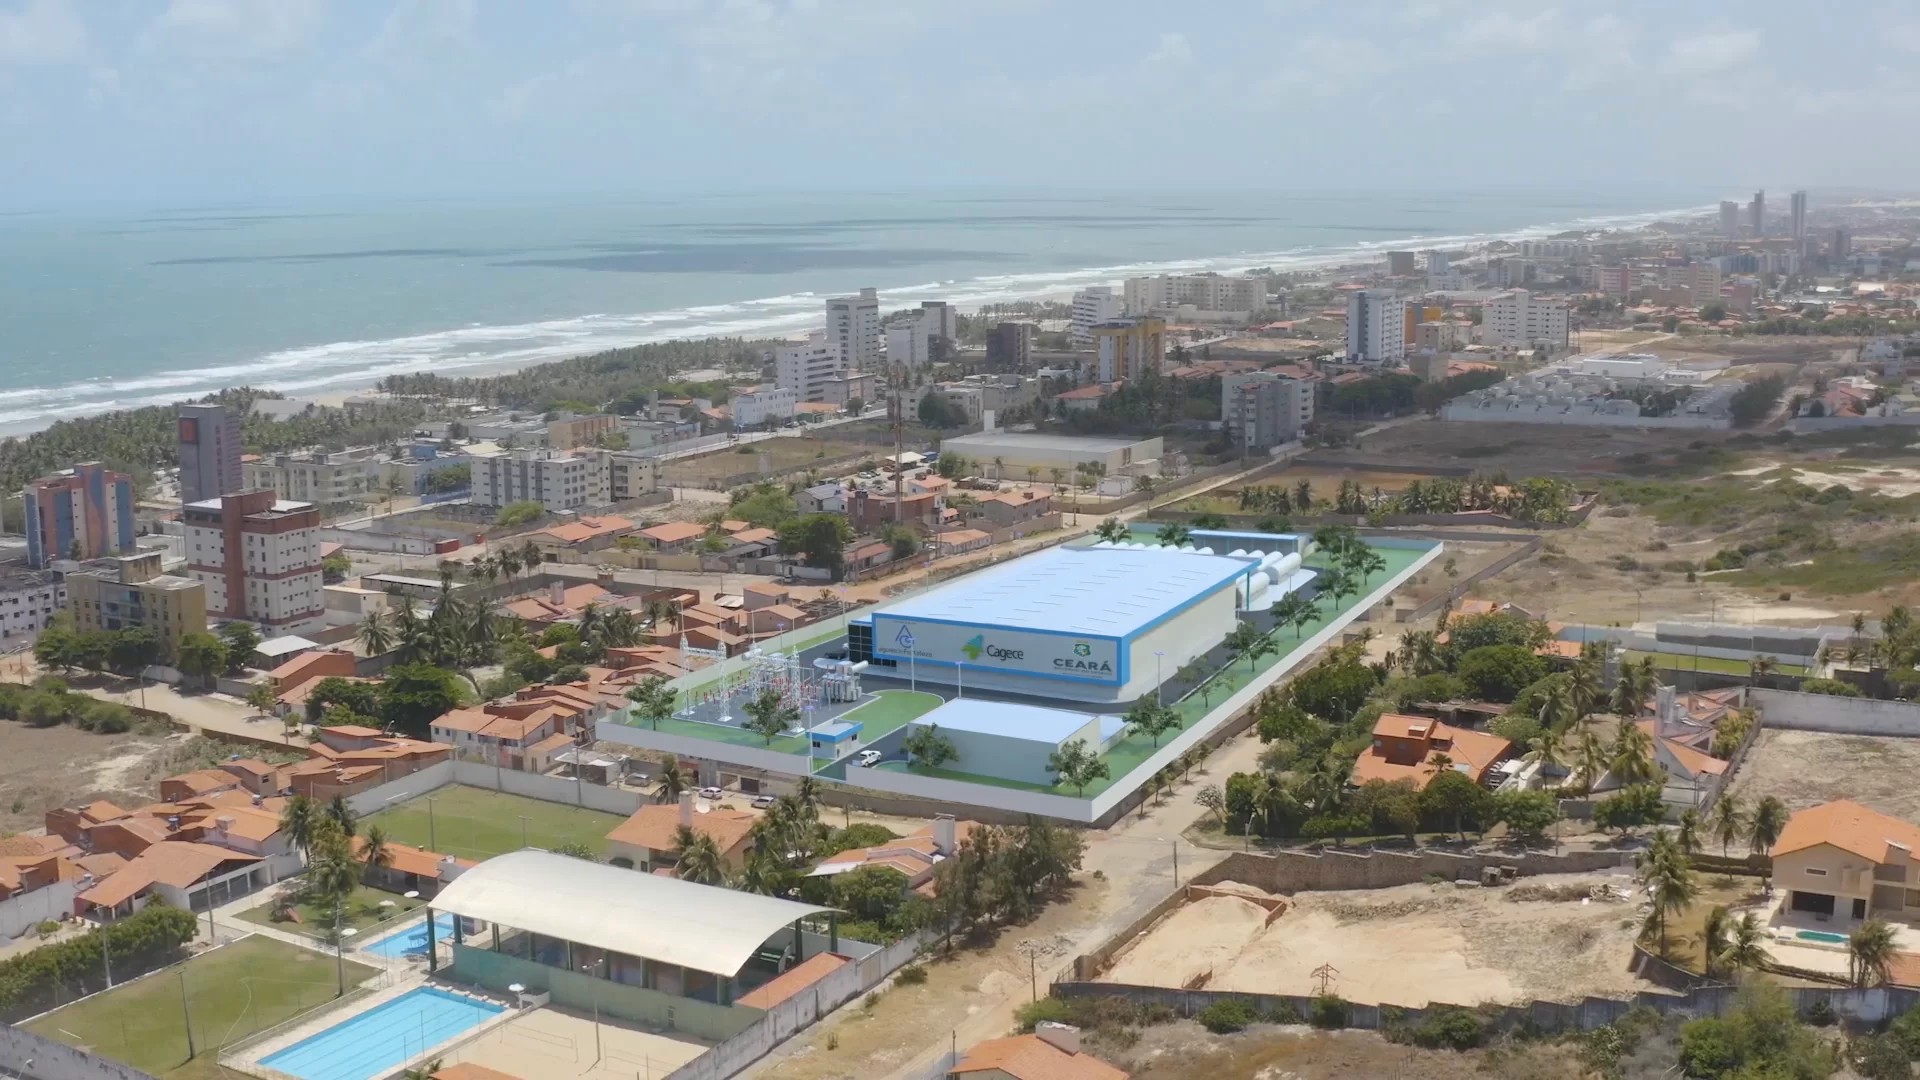 
Entenda oposição de empresas de internet à construção de usina próximo a cabos submarinos em Fortaleza